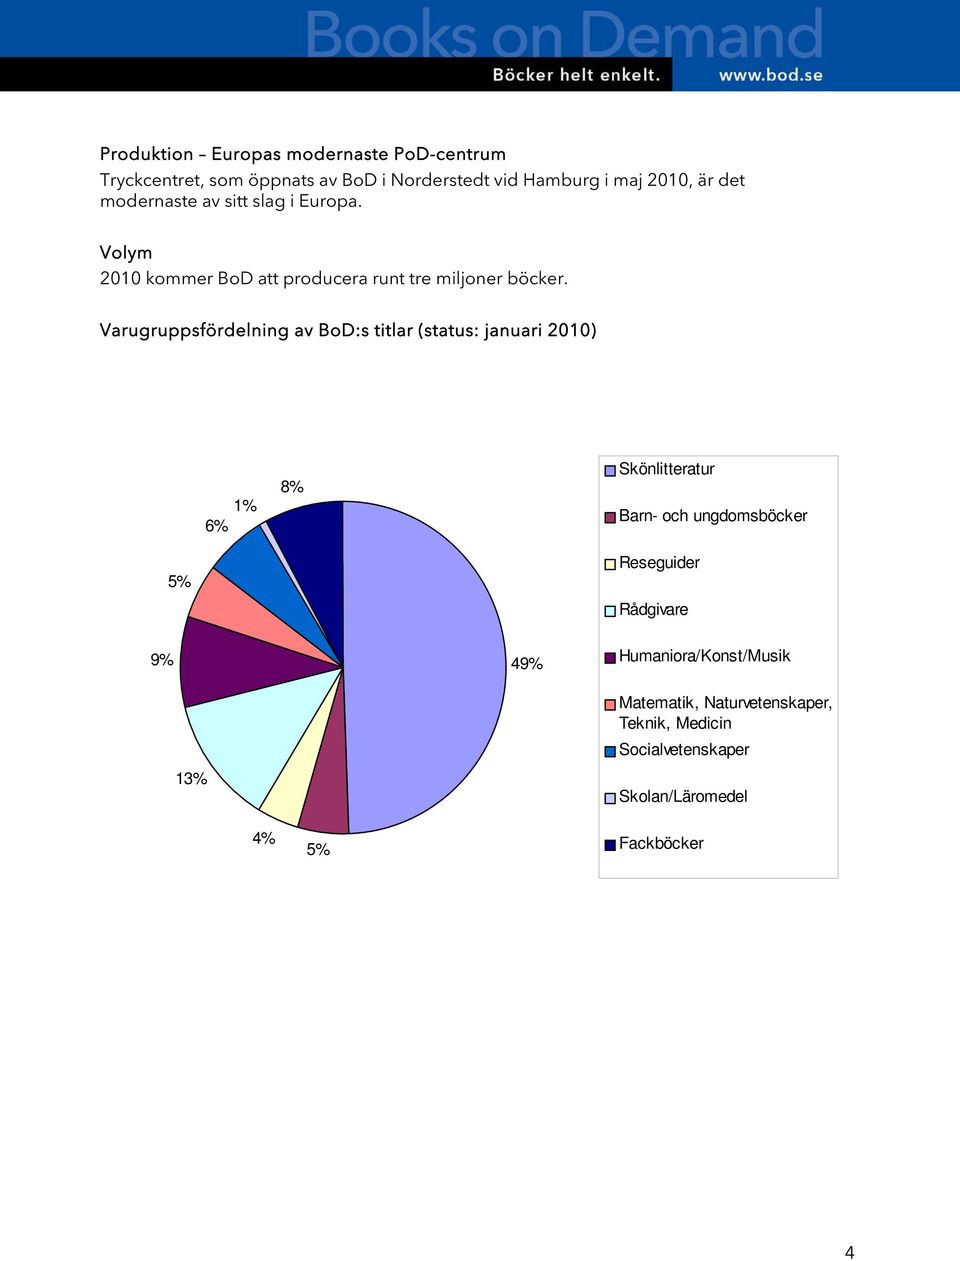 Varugruppsfördelning av BoD:s titlar (status: januari 2010) 1% 6% 8% Skönlitteratur Barn- och ungdomsböcker 5%